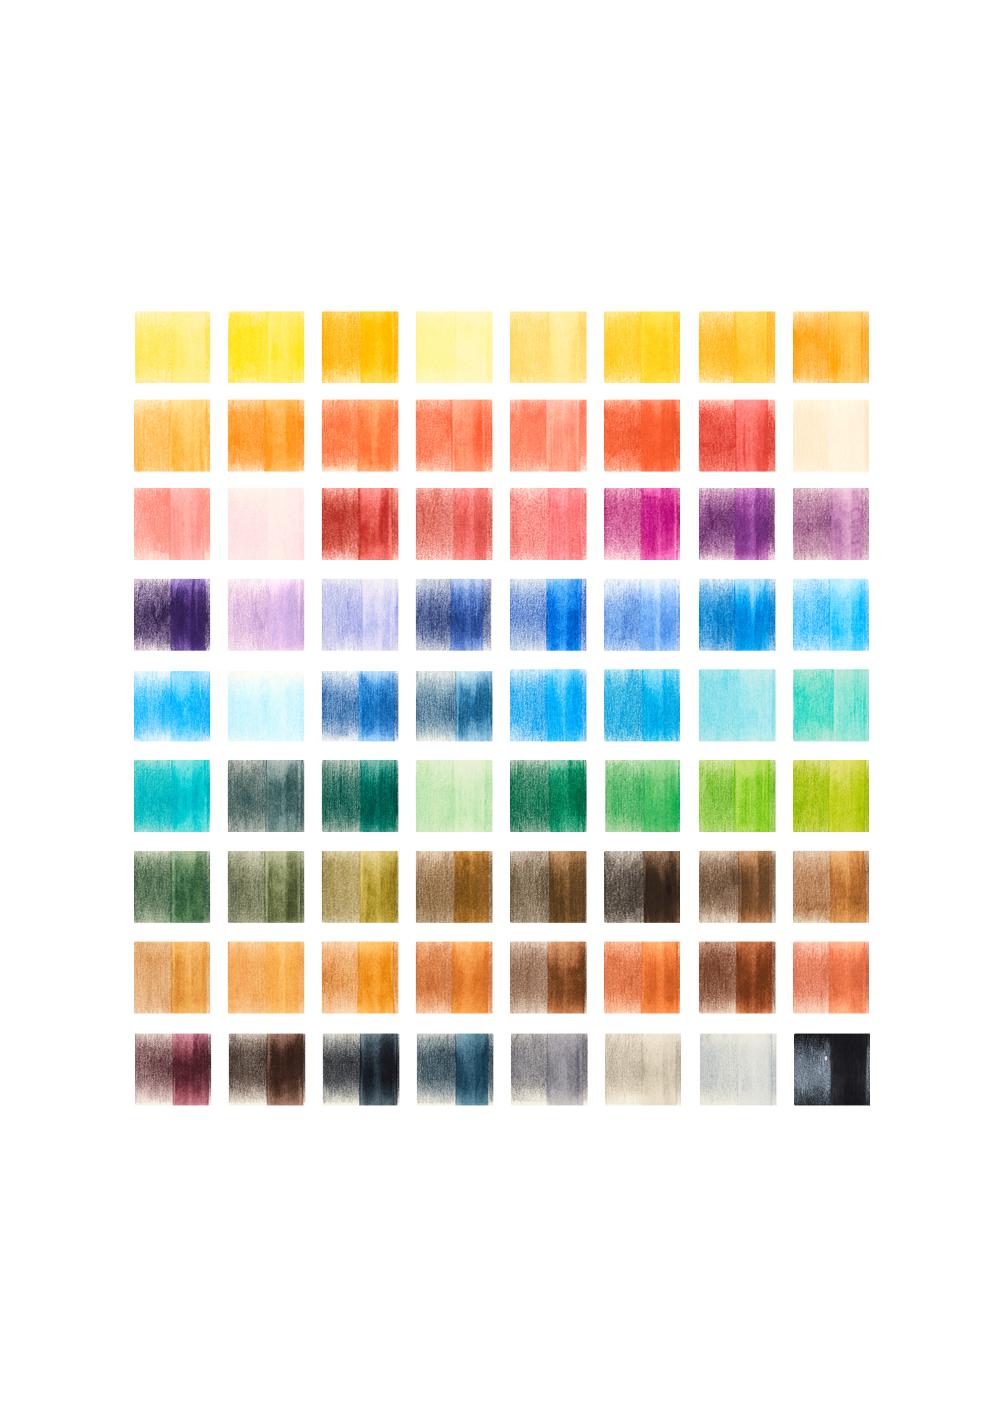 lapices-de-colores-acuarelables-derwent-watercolour-set-72